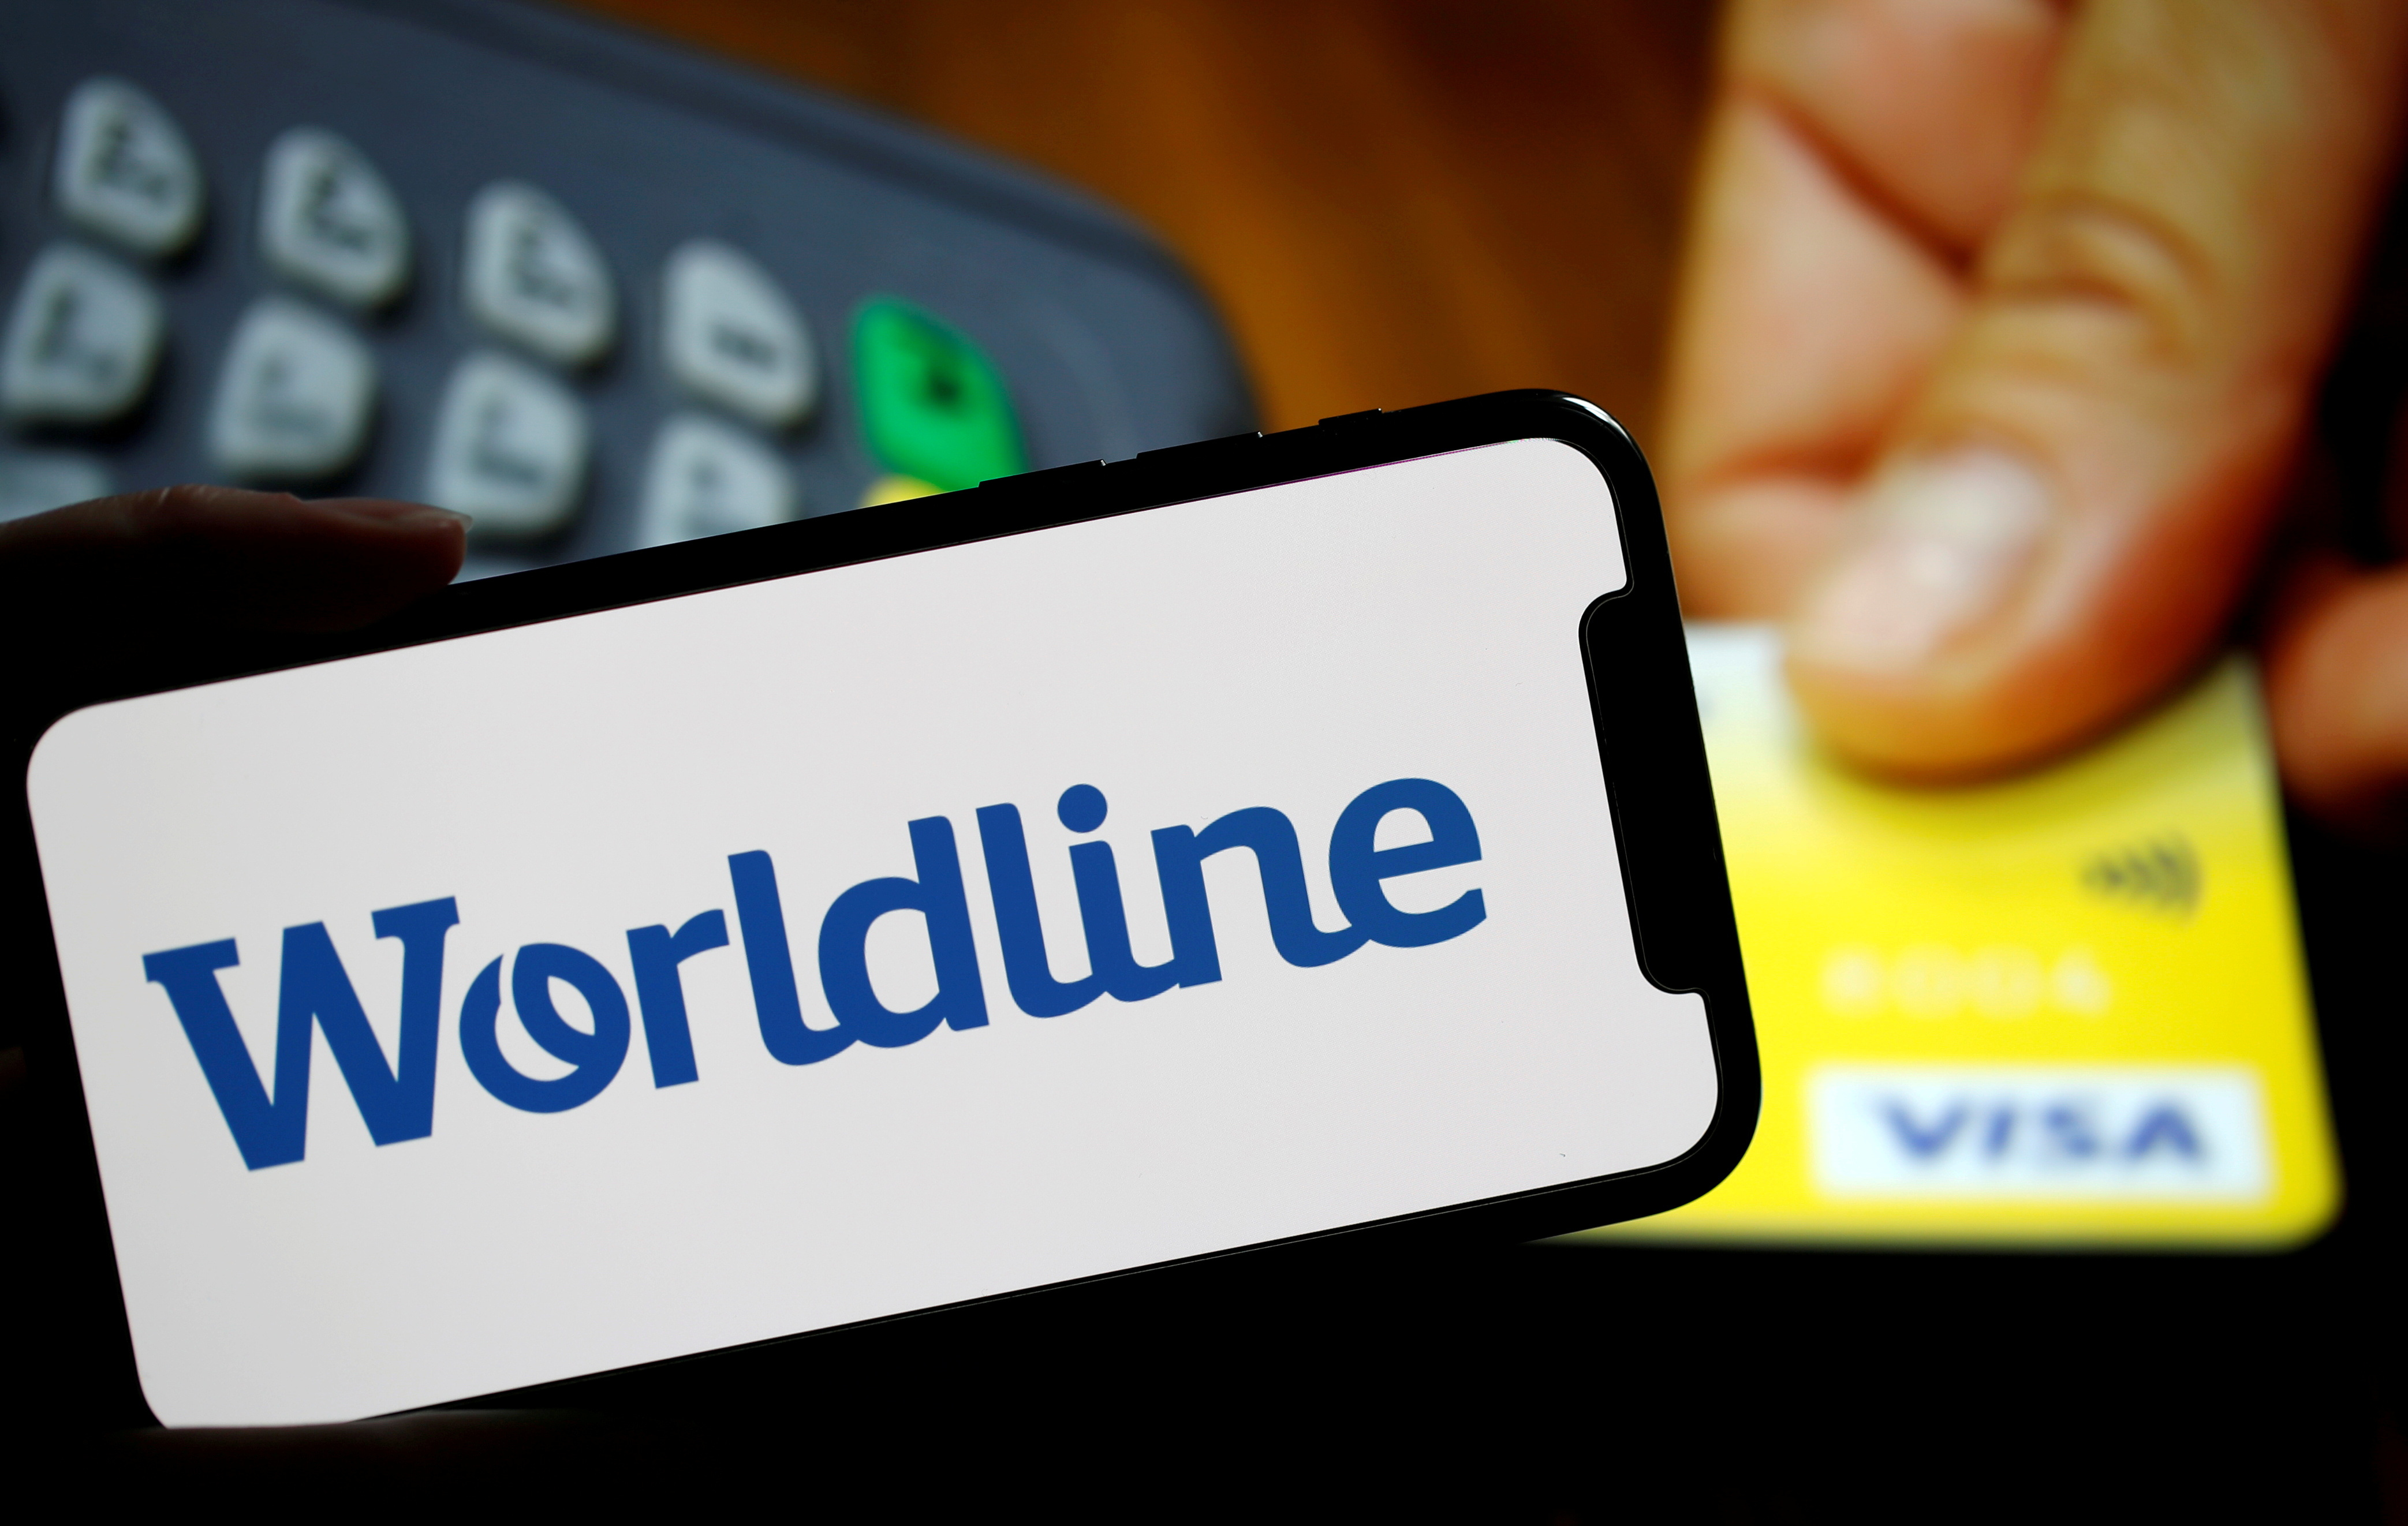 Paiements : Crédit Agricole confirme sa prise de participation dans Worldline, le titre décolle en Bourse